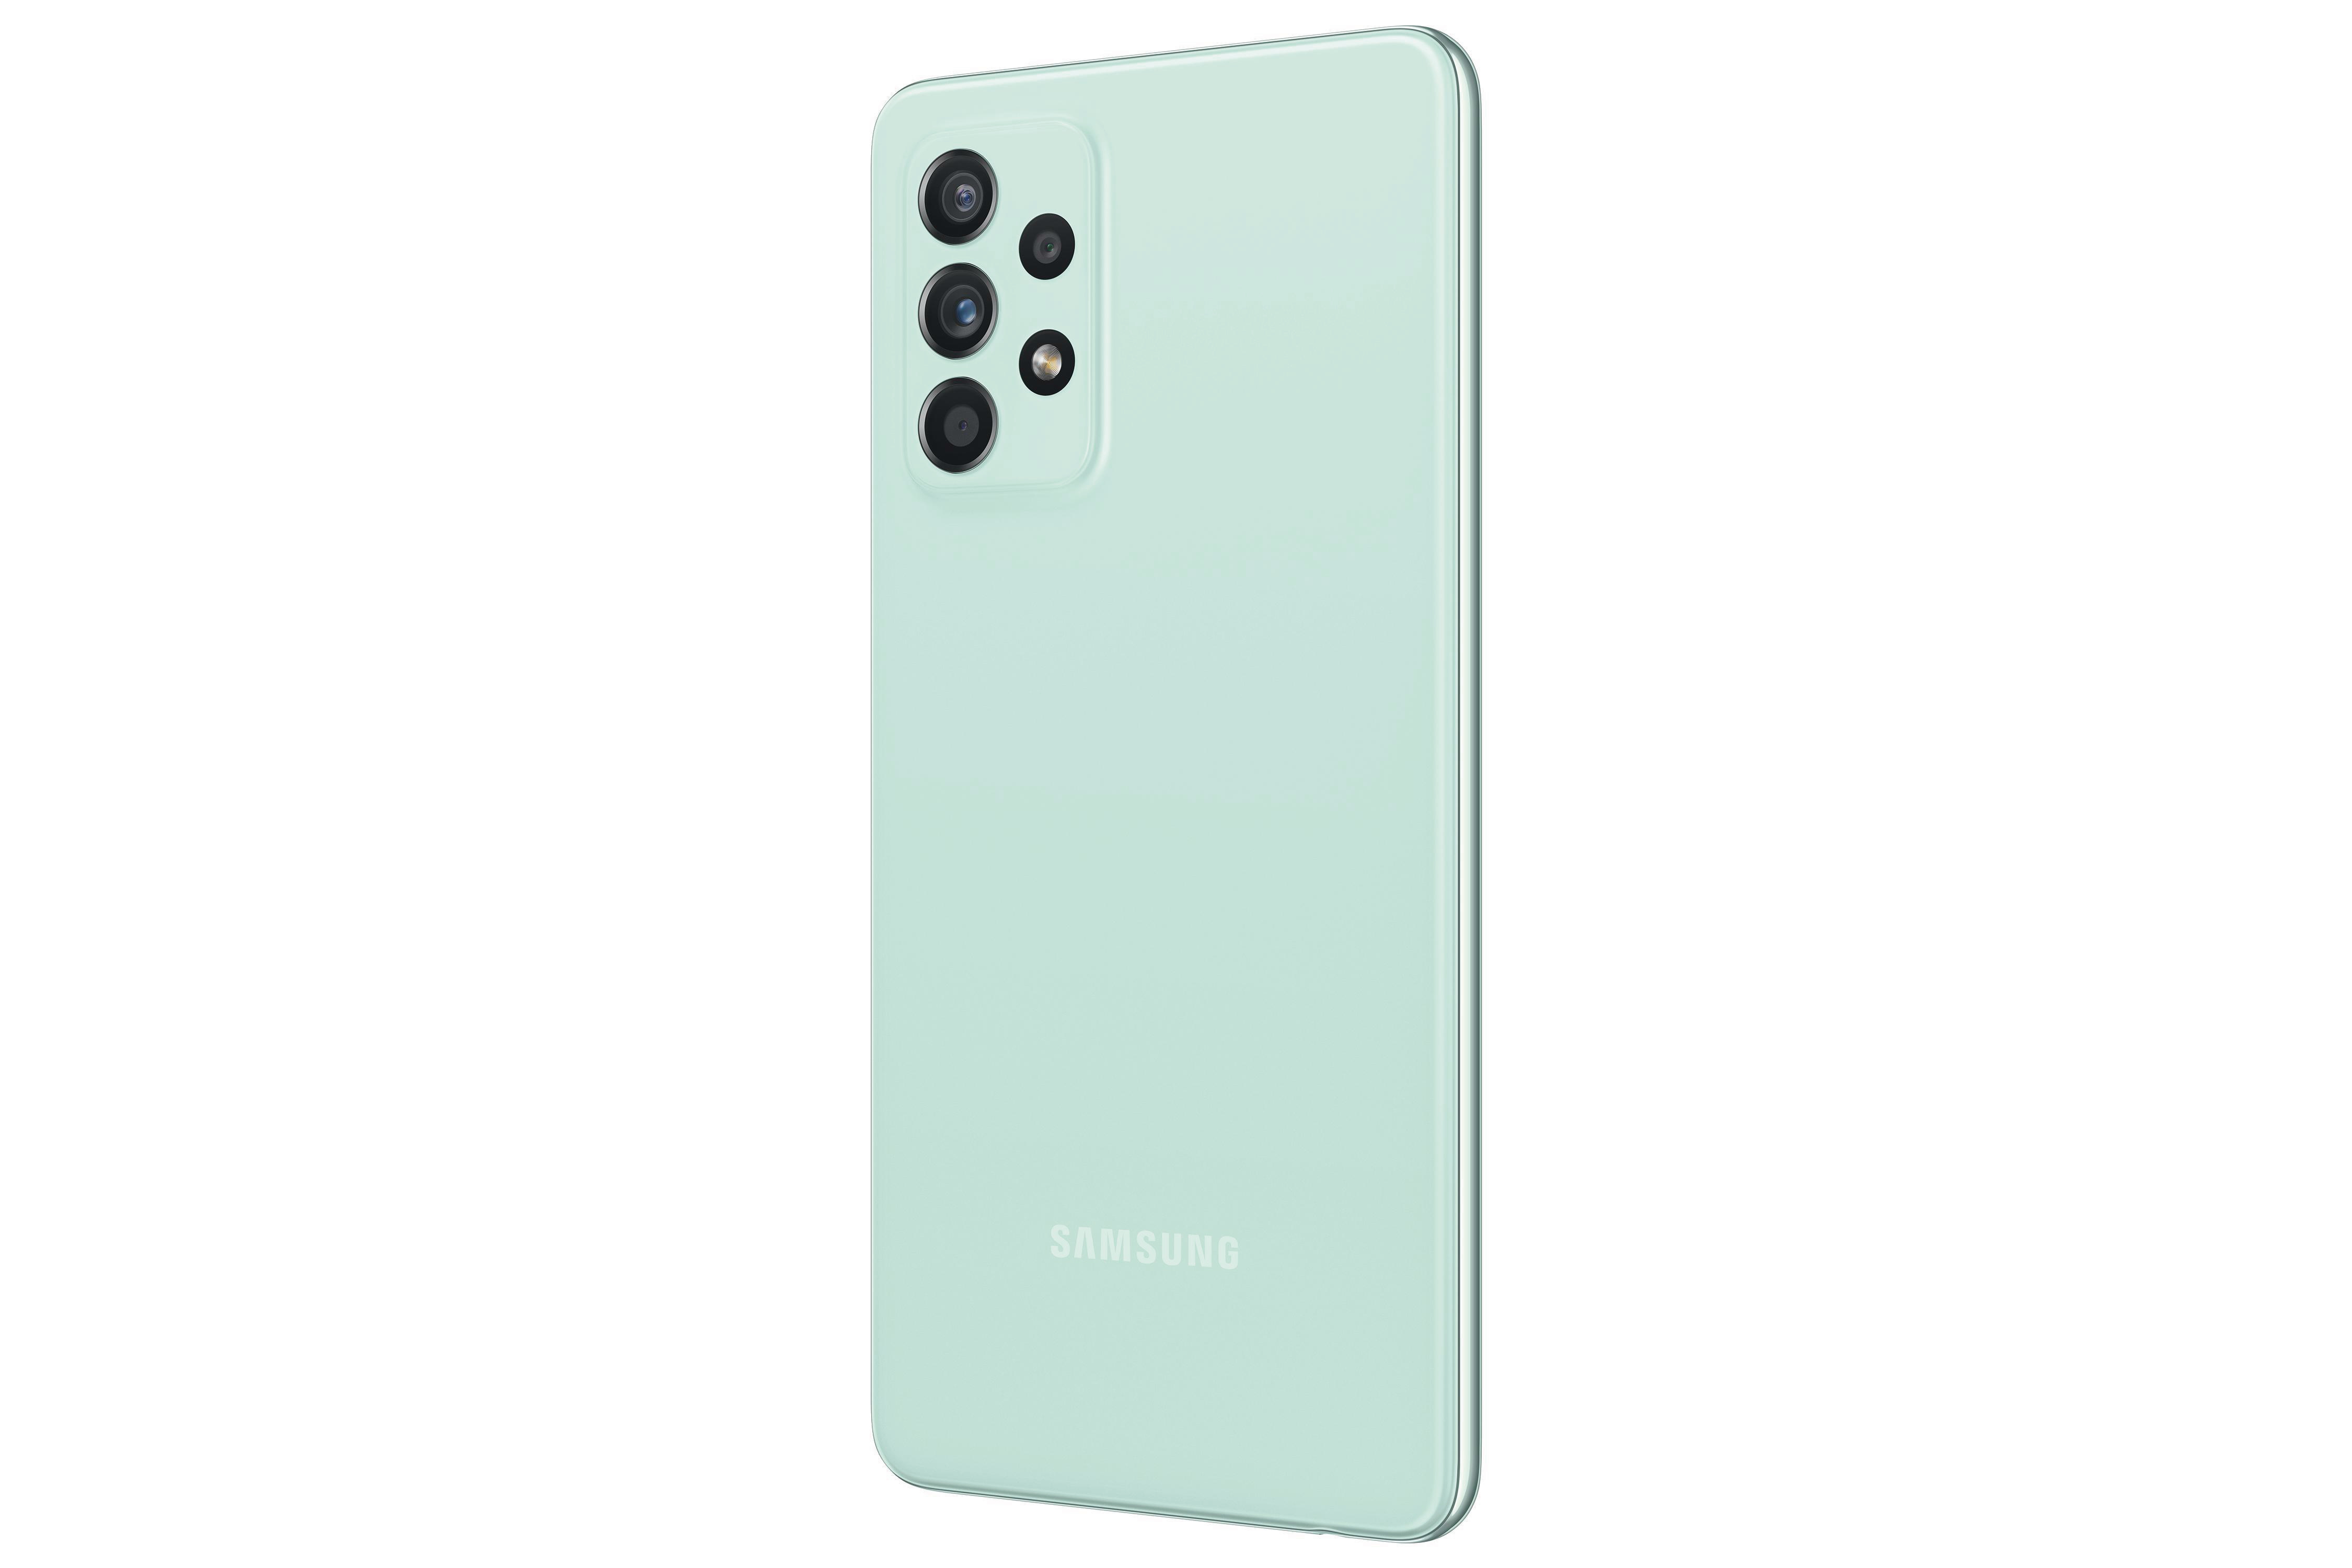 SAMSUNG Galaxy A52s 5G GB SIM Awesome 256 Green Dual